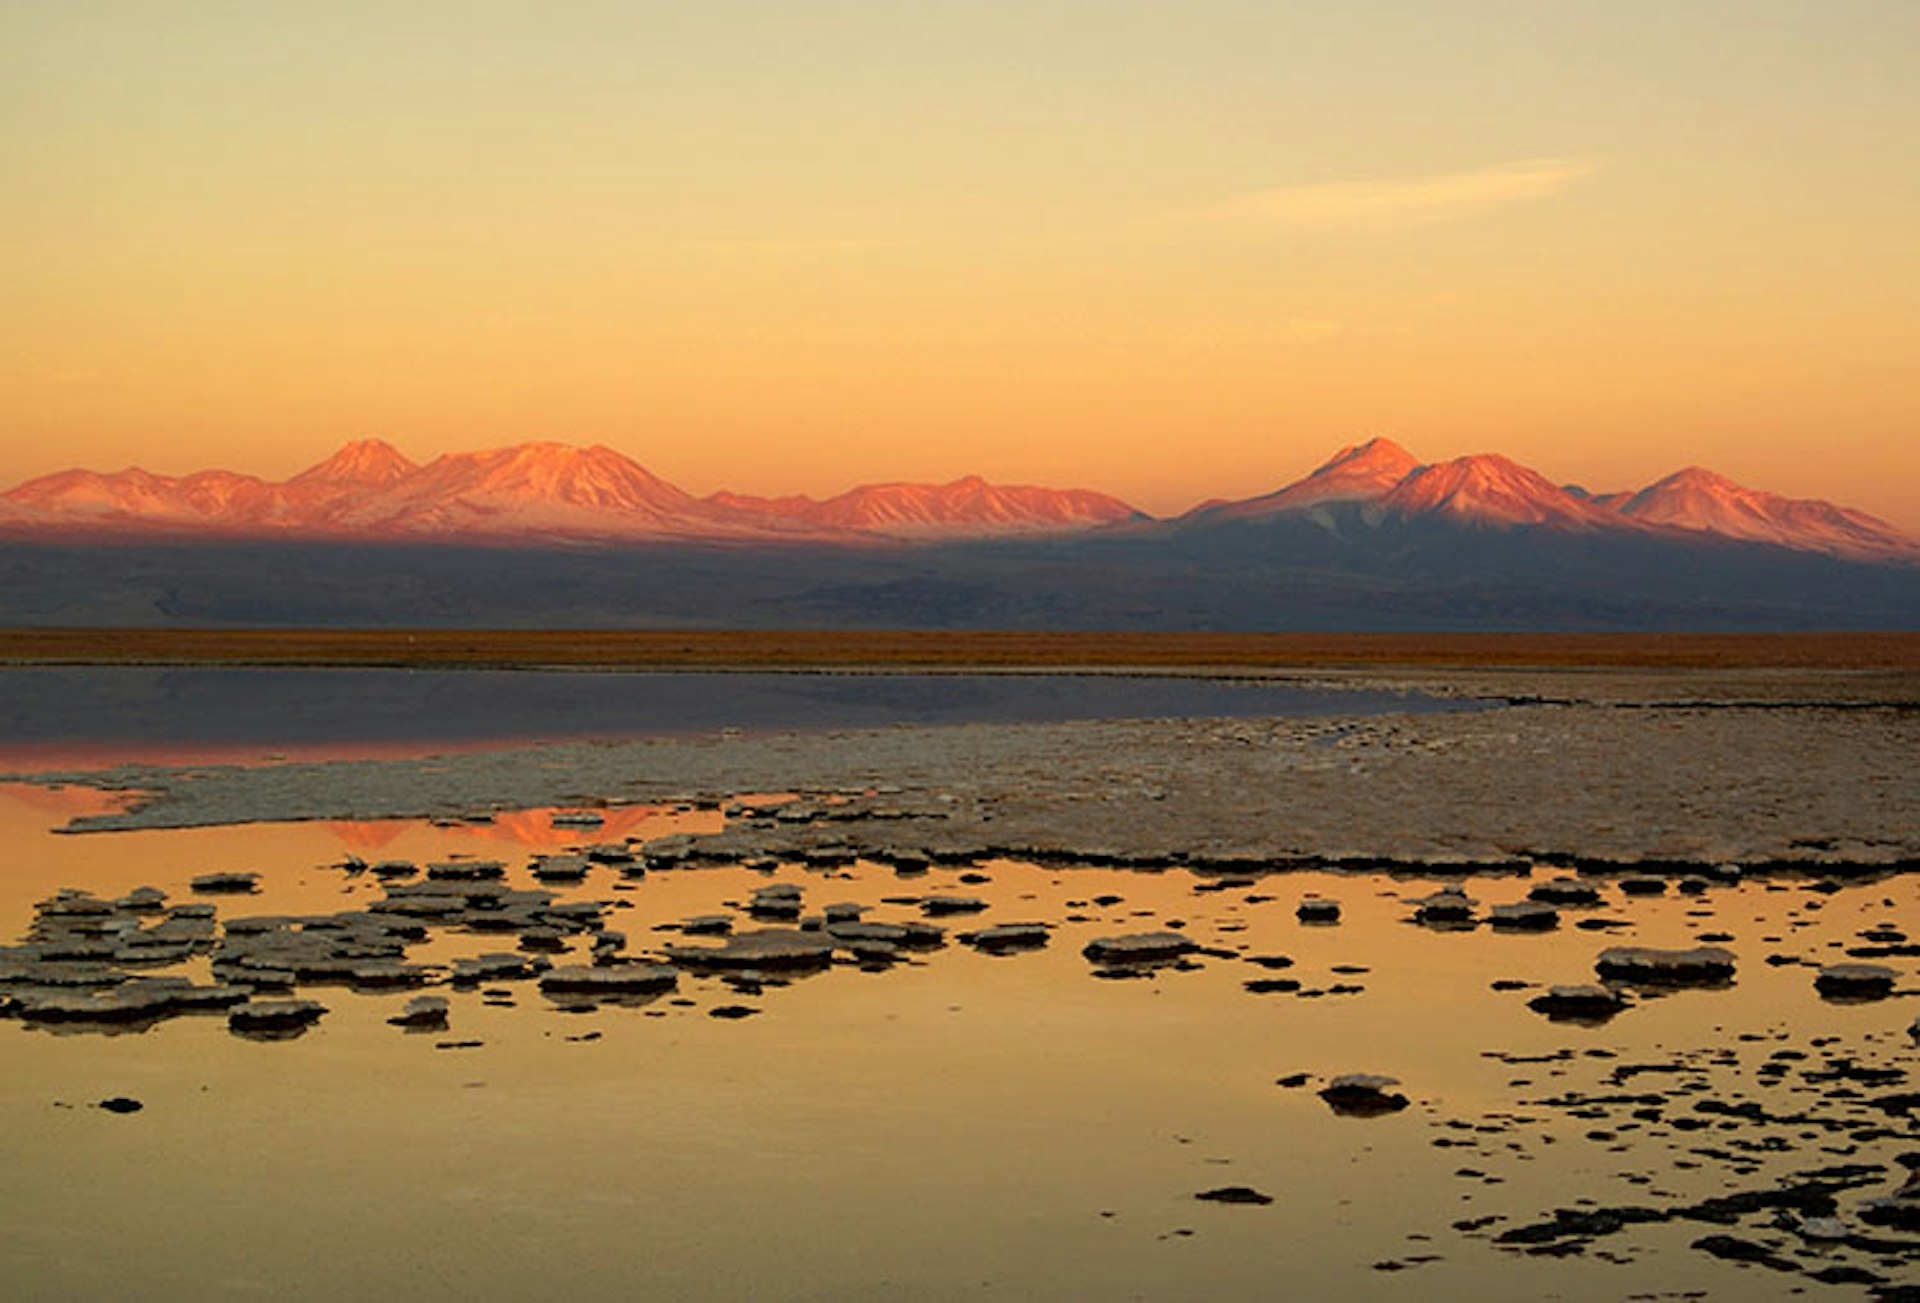 3. Sunset-over-the-Salar-de-Atacama